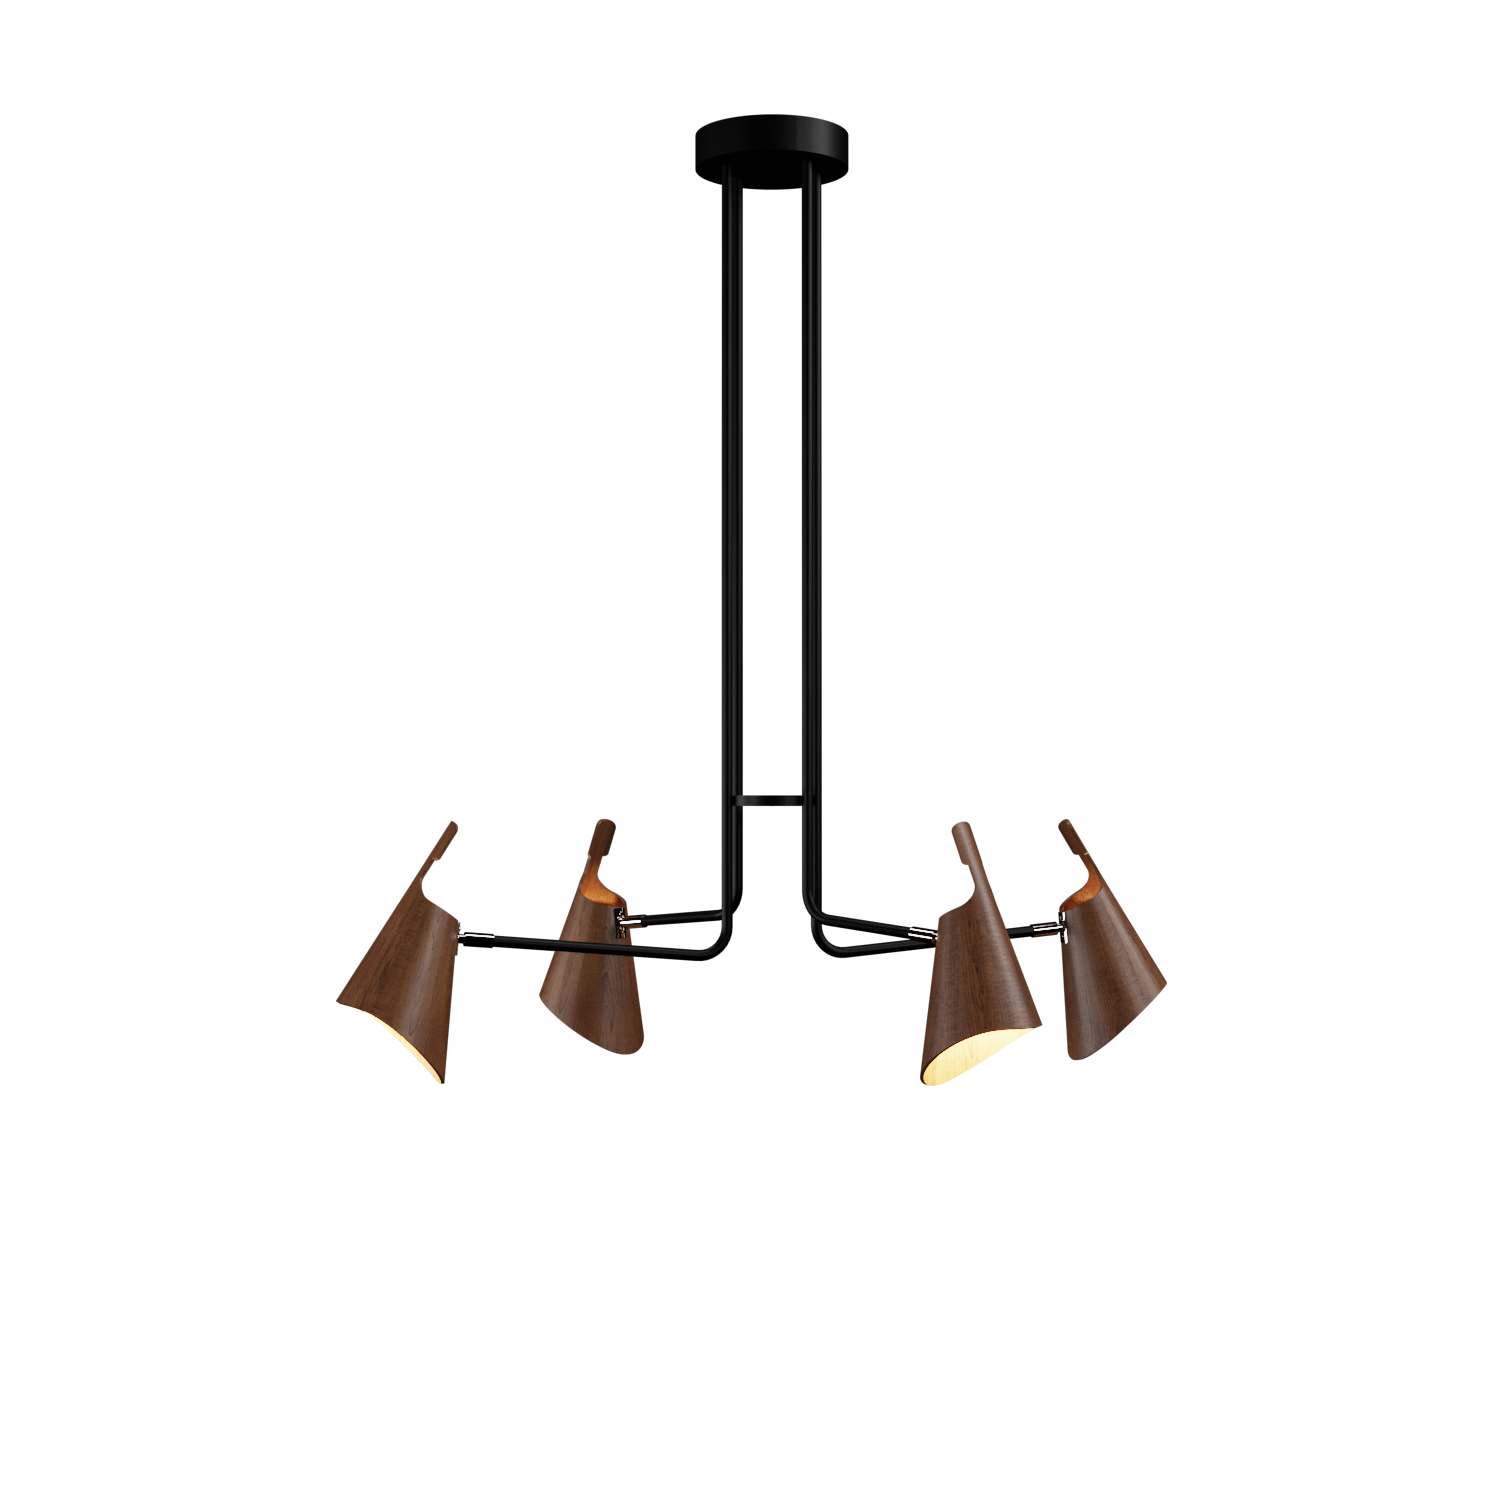 Pendant Lamp Accord Balance 1446 - Balance Line Accord Lighting | 06. Imbuia